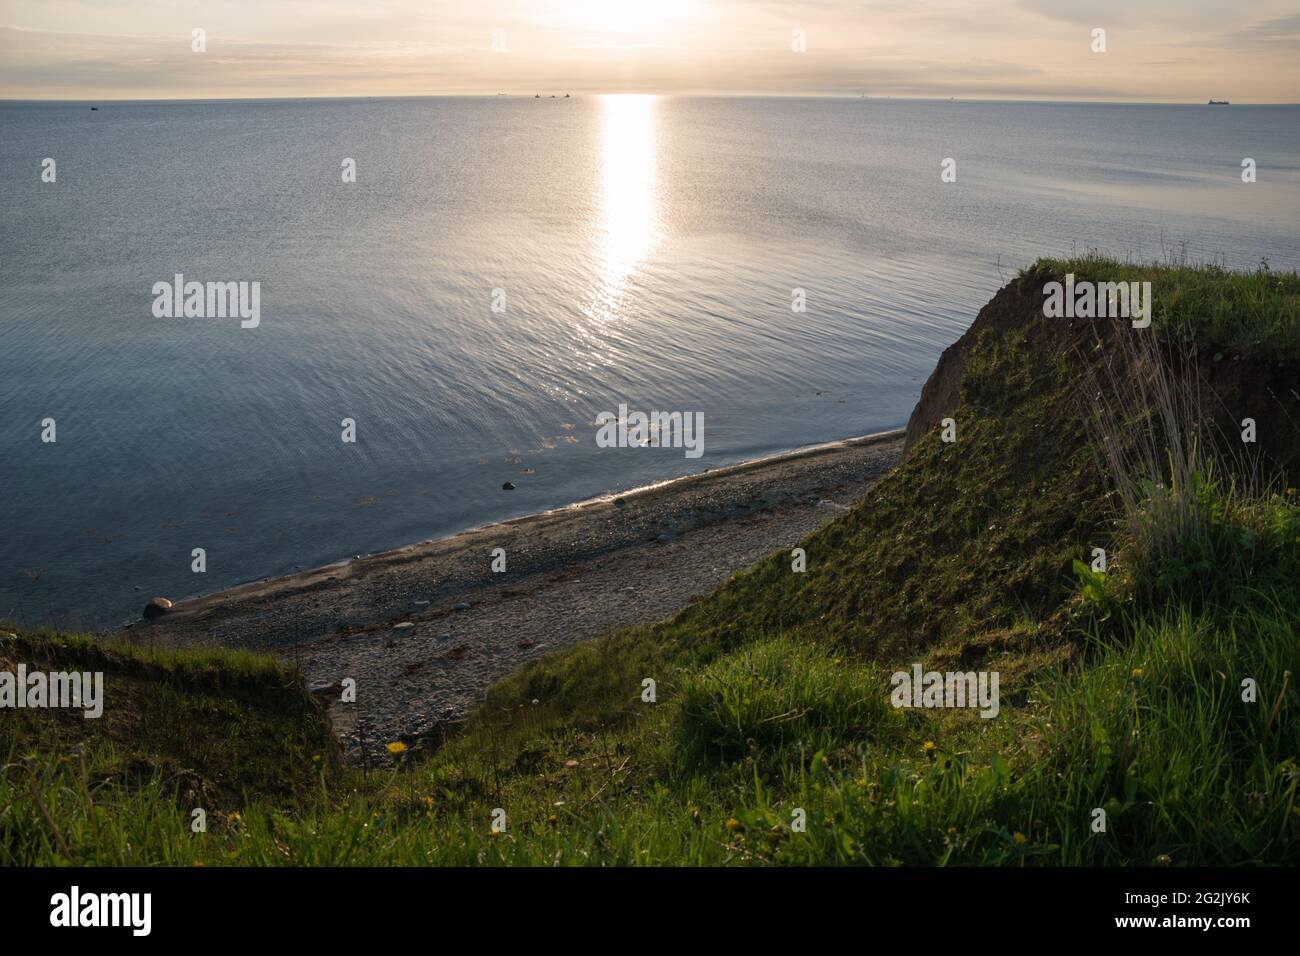 Lever du soleil sur la côte escarpée de Stohl, Dänischenhagen, Kiel, mer Baltique Banque D'Images